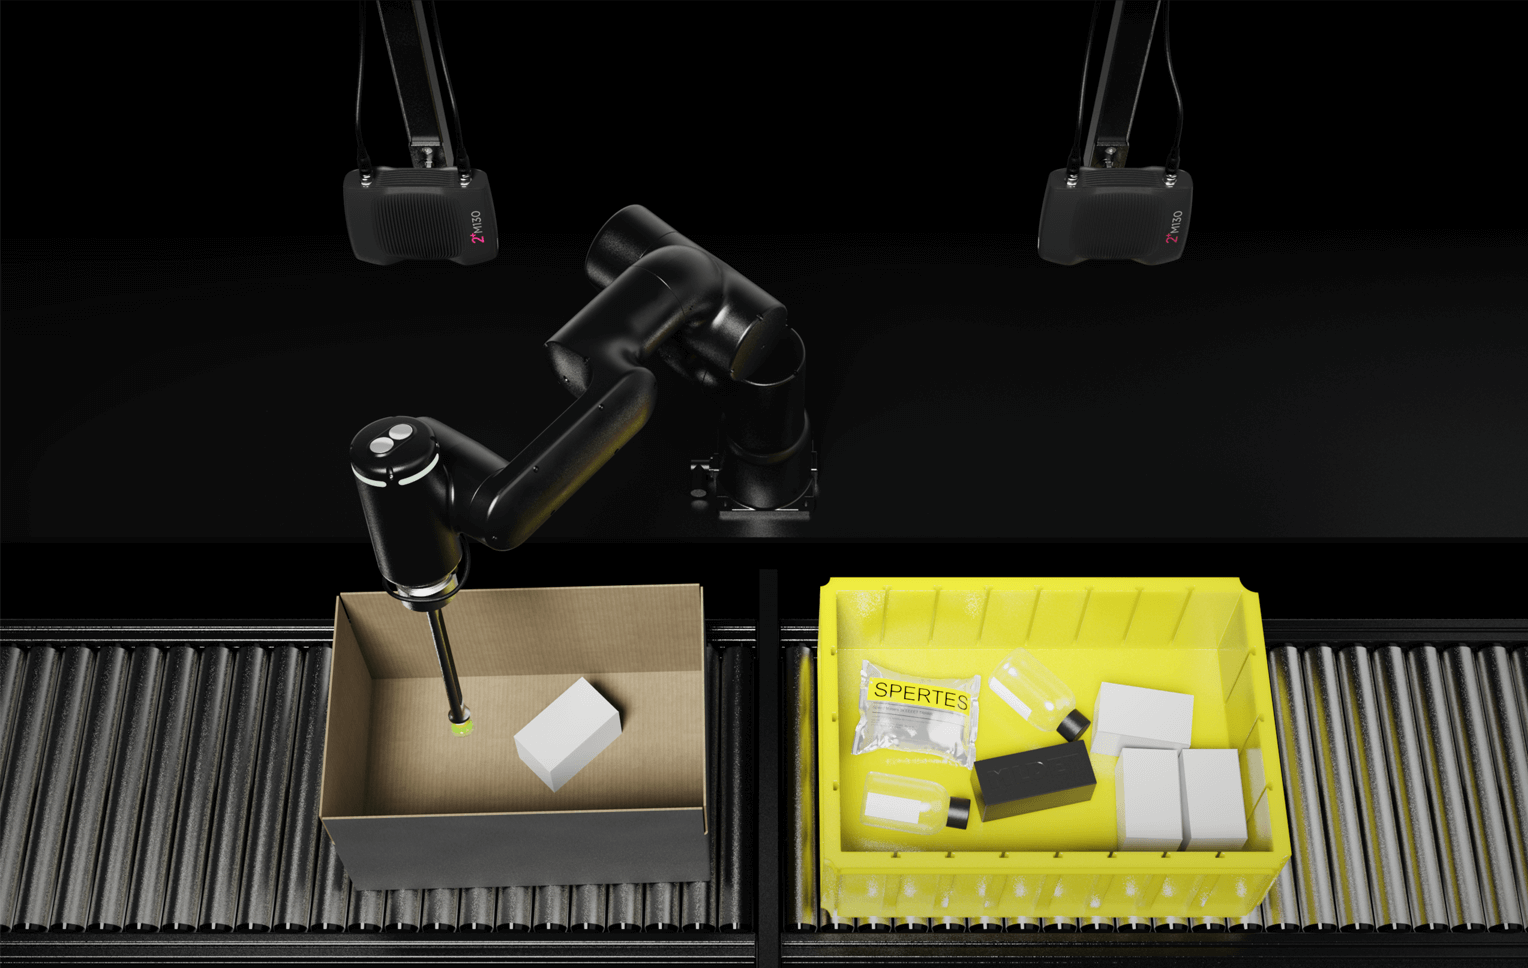 Zivid 2+ 3D 相机专为高速可靠拣选所有库存商品而设计，攻克透明物品拣选难题。